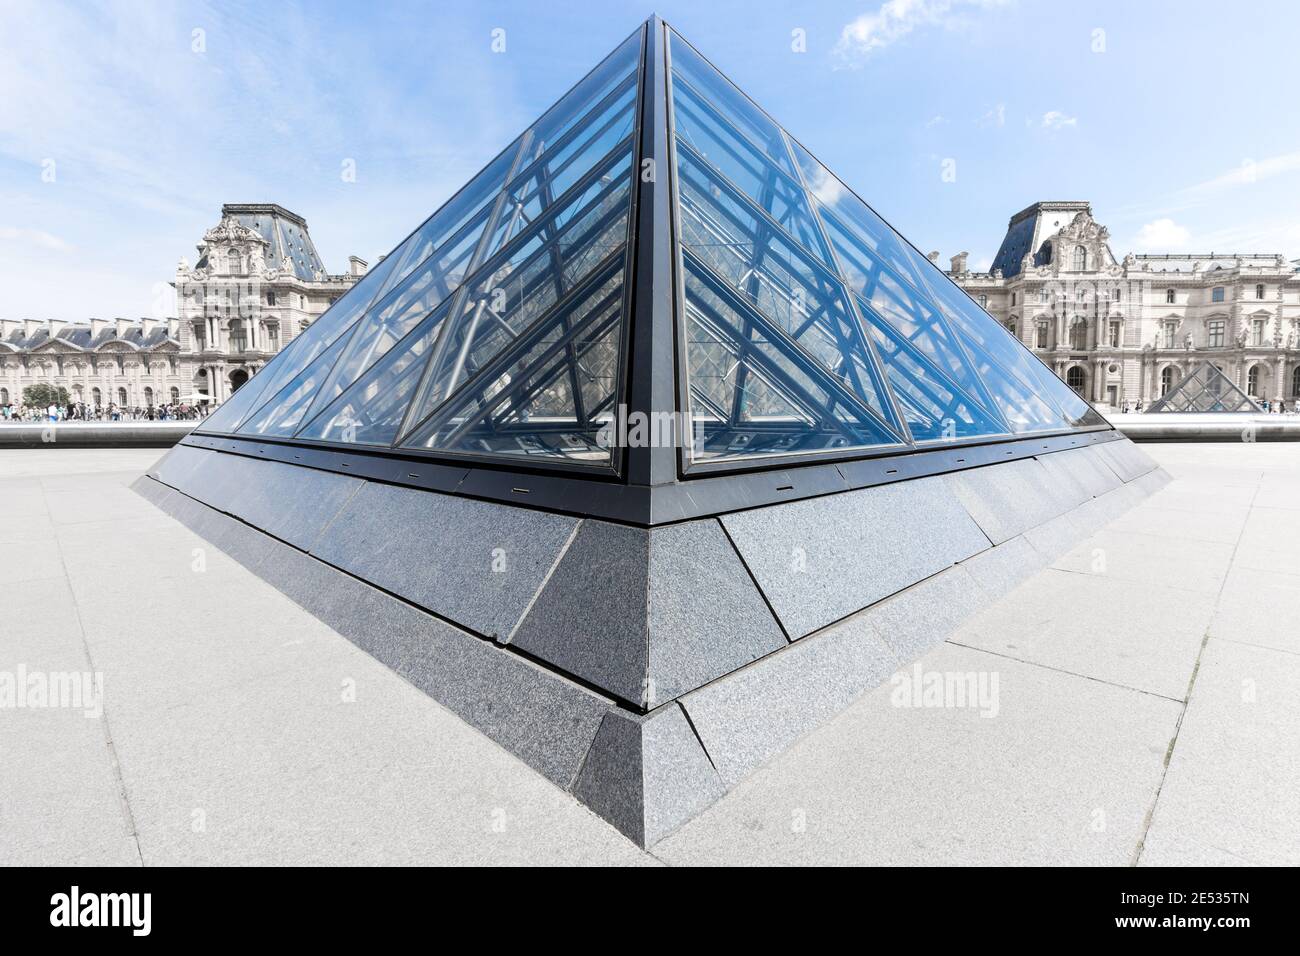 Vista grandangolare simmetrica della Piramide del Louvre, sotto un cielo estivo blu con nuvole sparse Foto Stock